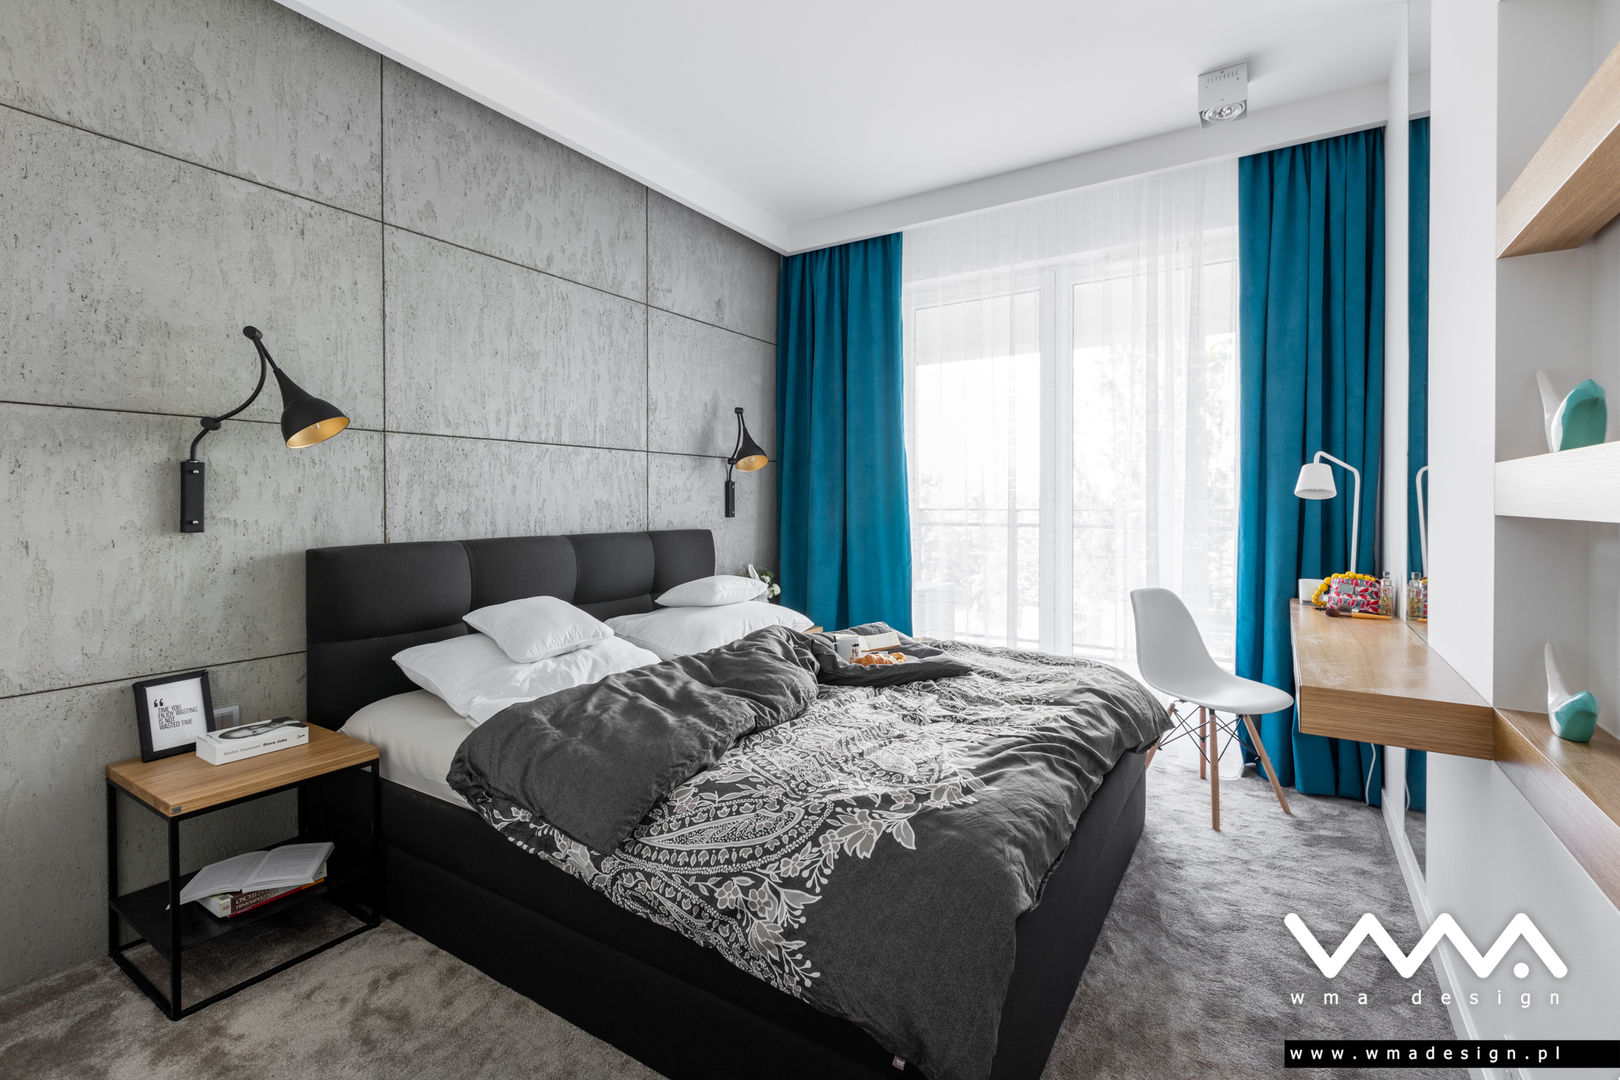 sypialnia z betonem WMA Design Nowoczesna sypialnia sypialnia,beton,szarości,dąb,biele,wmadesign